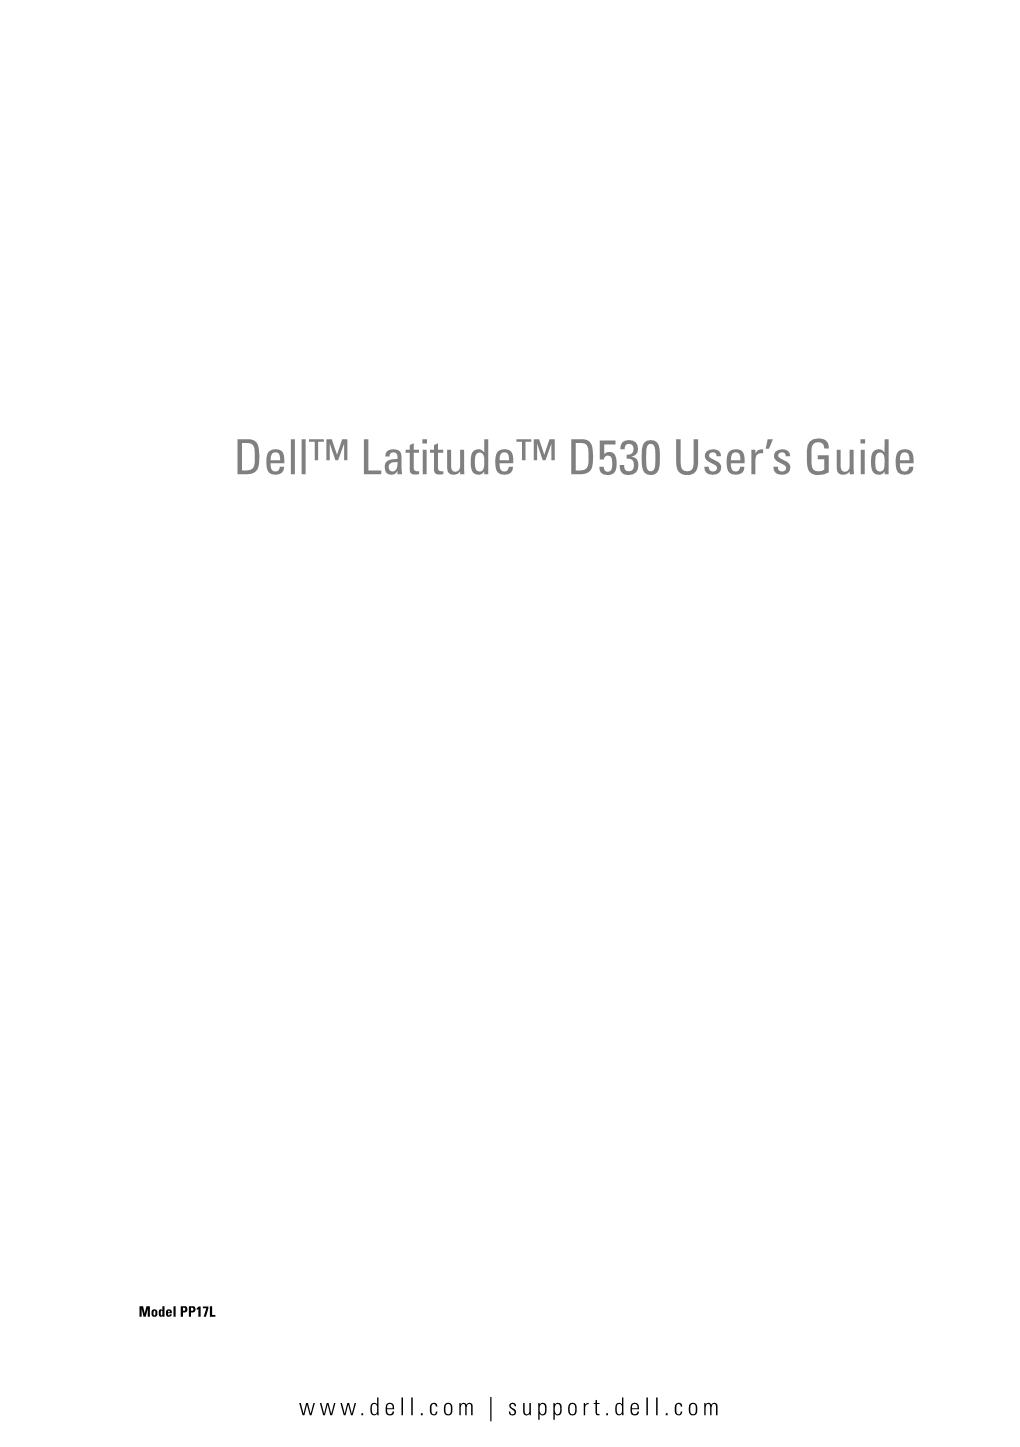 Dell™ Latitude™ D530 User's Guide